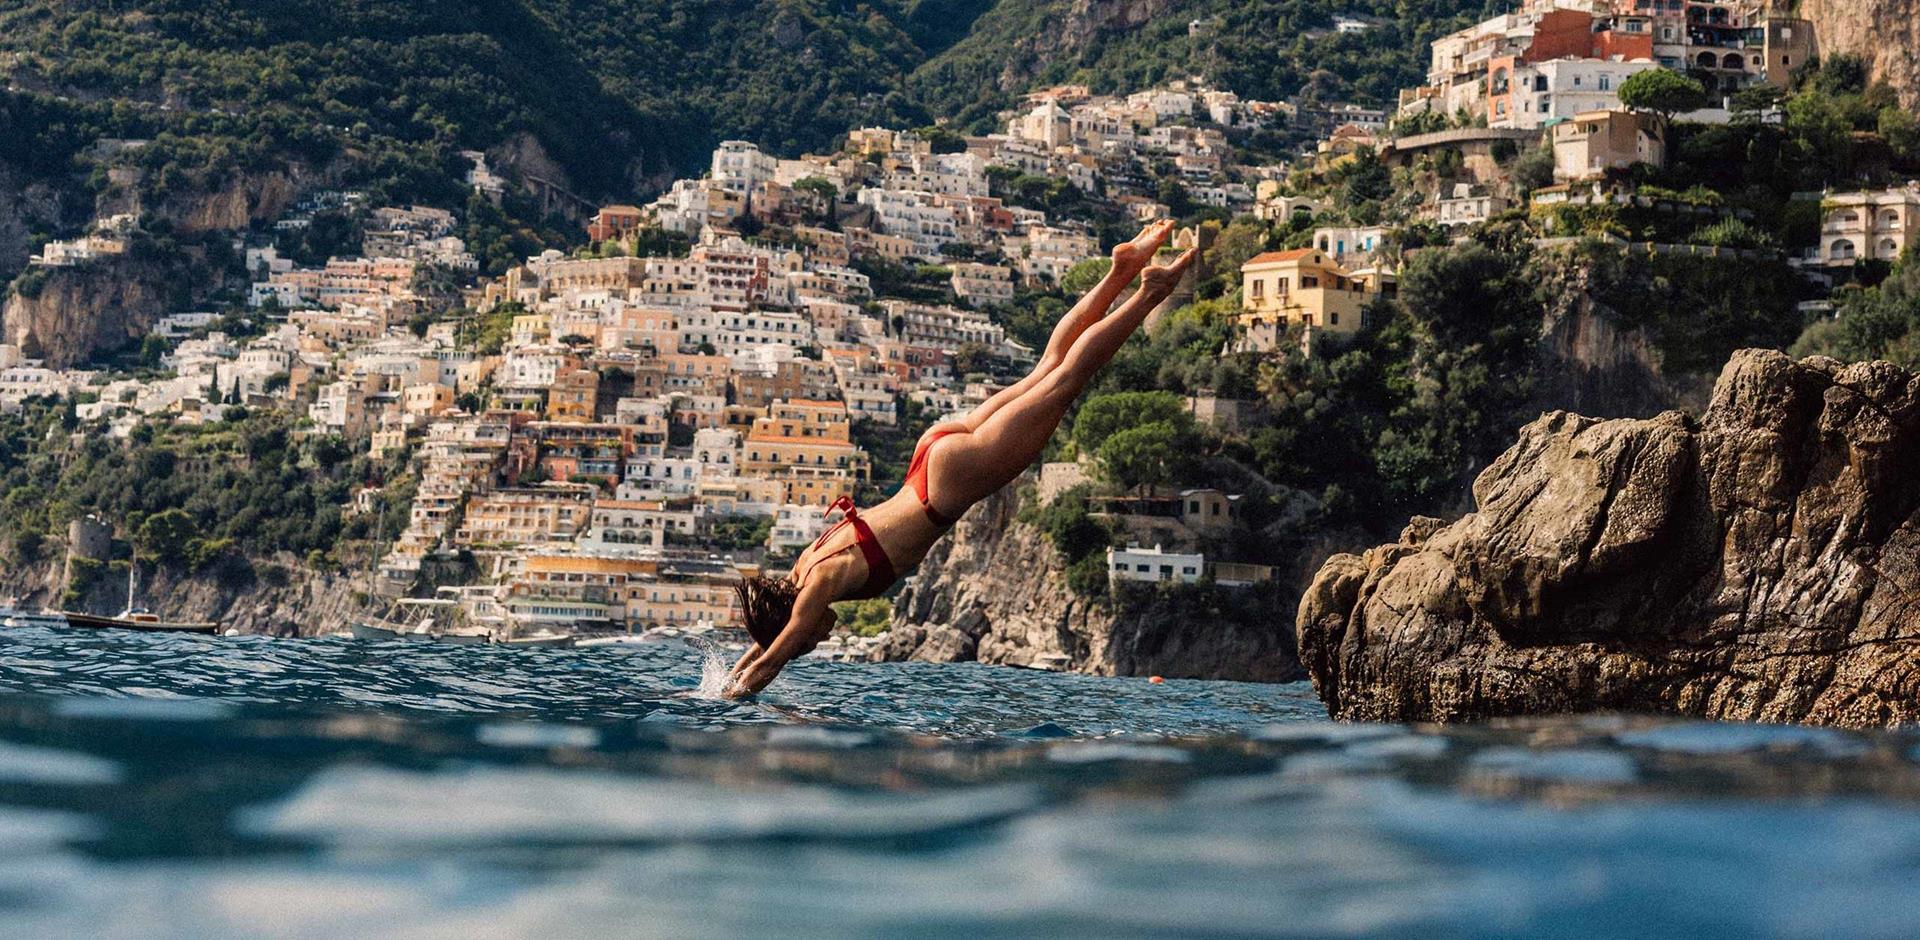 Diving into the sea off the Amalfi Coast